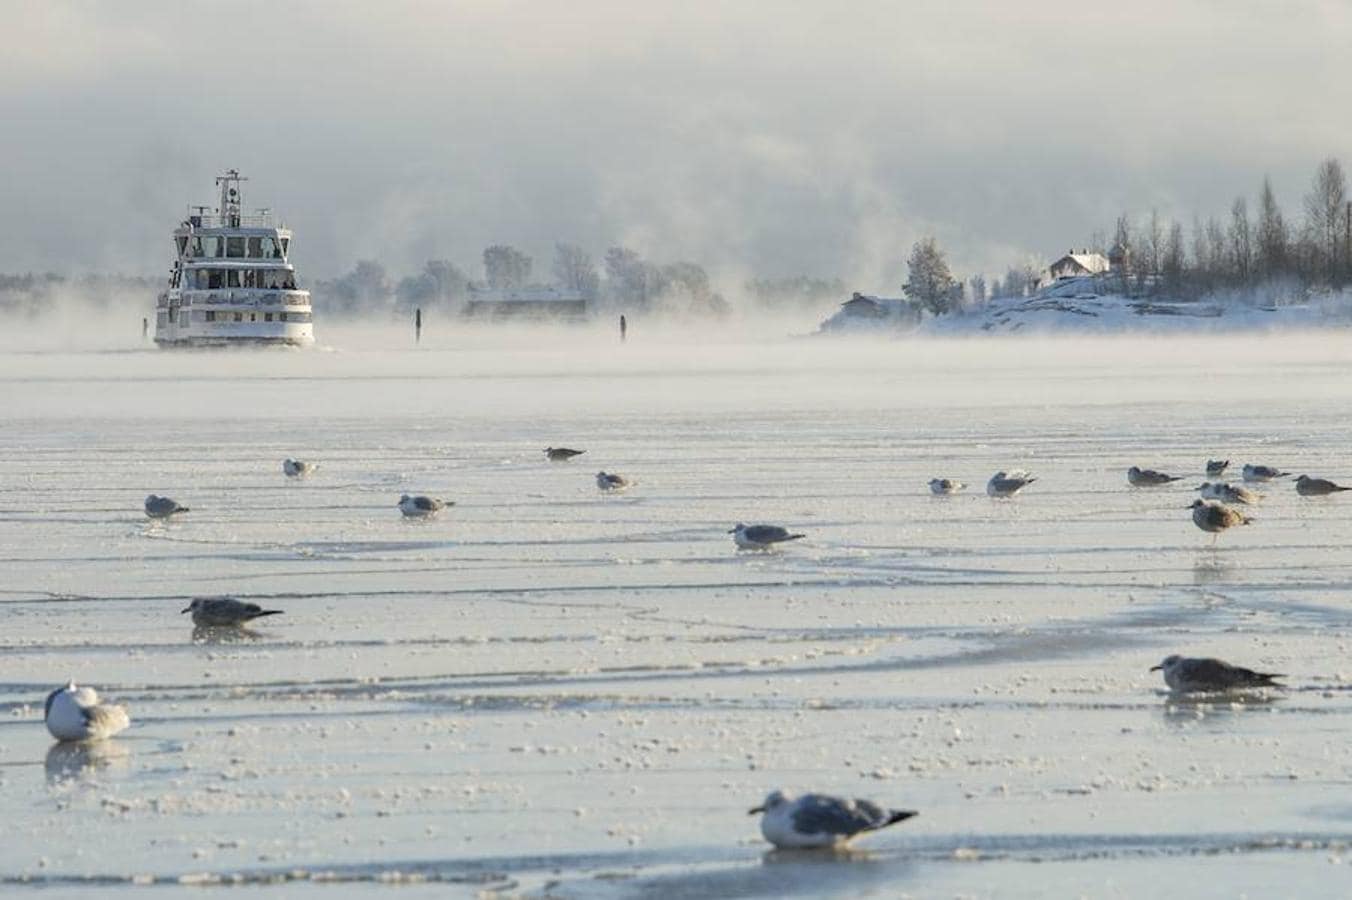 Gaviotas posadas sobre el hielo mientras el ferri Suomenlinna se aproxima al Puerto Sur en Helsinki (Finlandia)